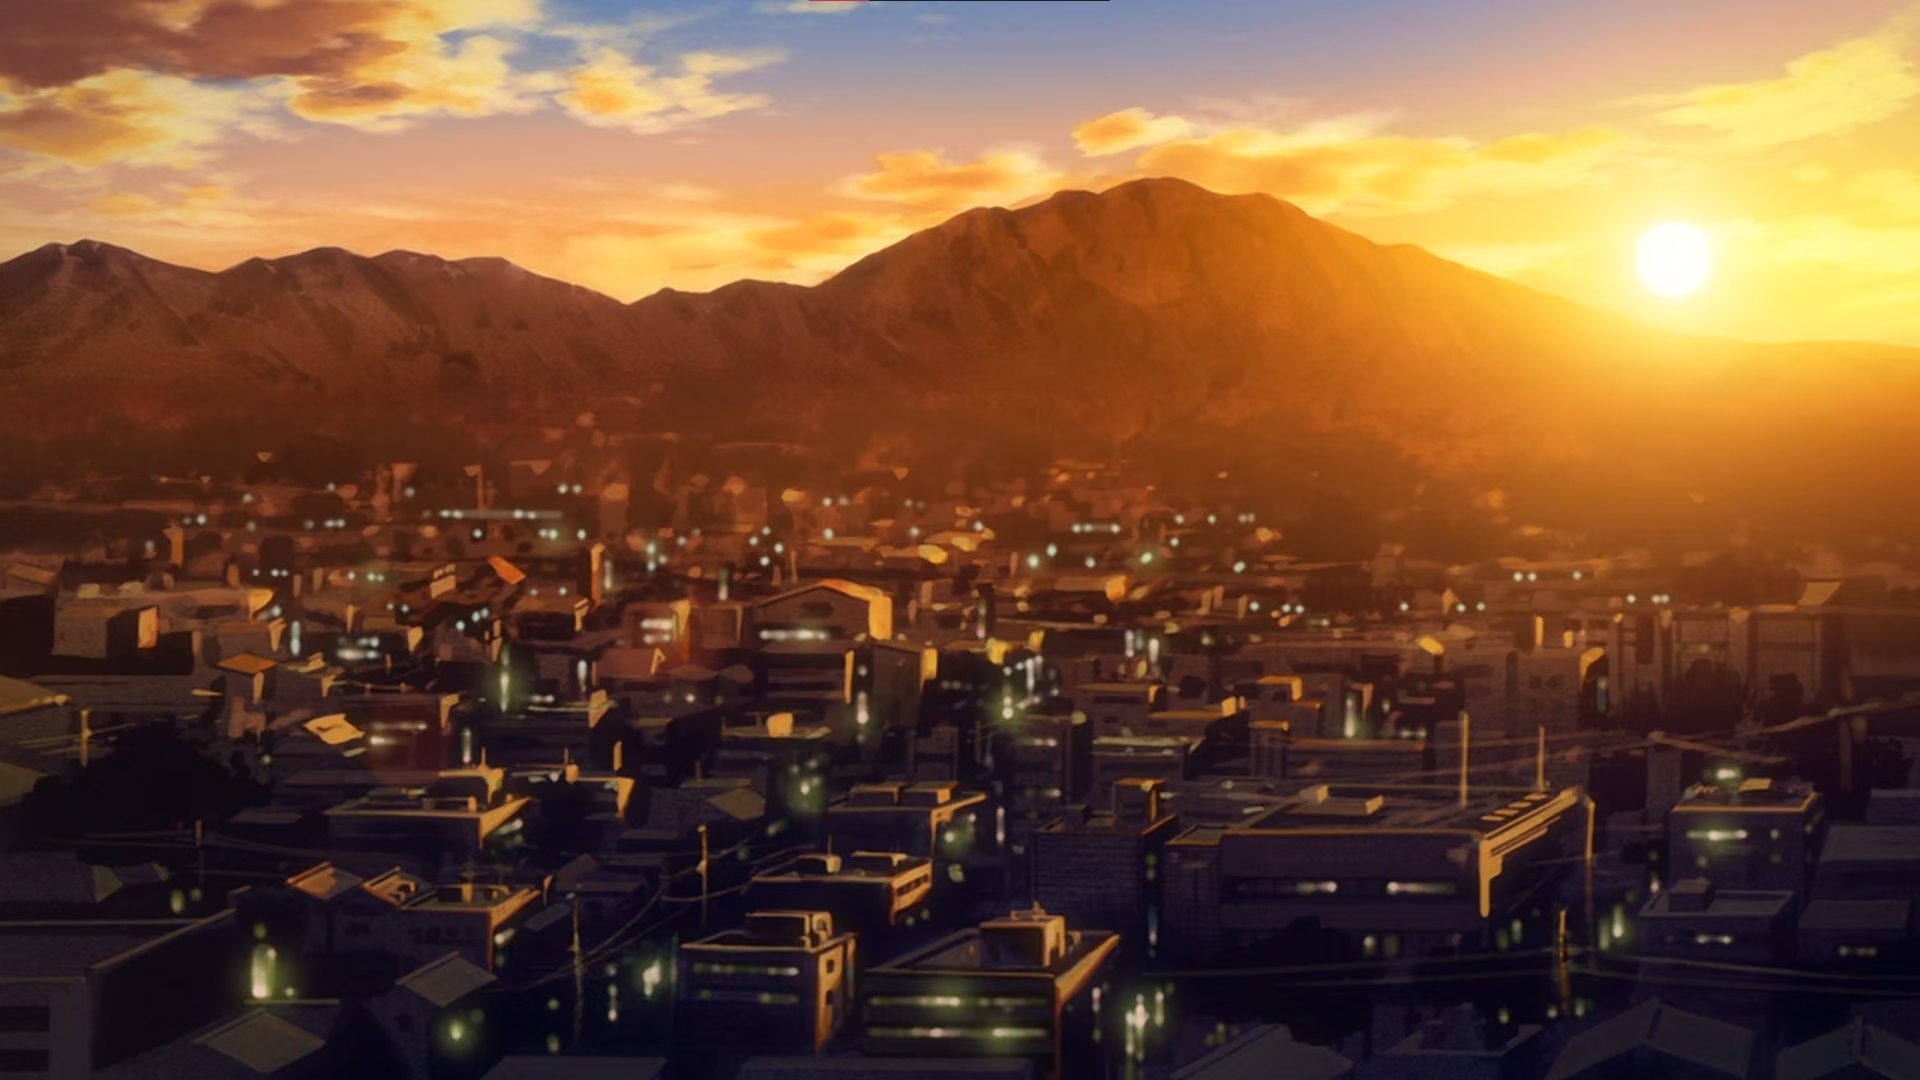 Những hình ảnh anime về phong cảnh buổi tối sẽ khiến bạn say mê. Màu sắc tươi tắn đầy sức sống sẽ làm cảm thấy tinh thần thoải mái và sảng khoái. Bức ảnh đem đến cho bạn cảm giác chiêm ngưỡng một khung cảnh đẹp ngất ngây!